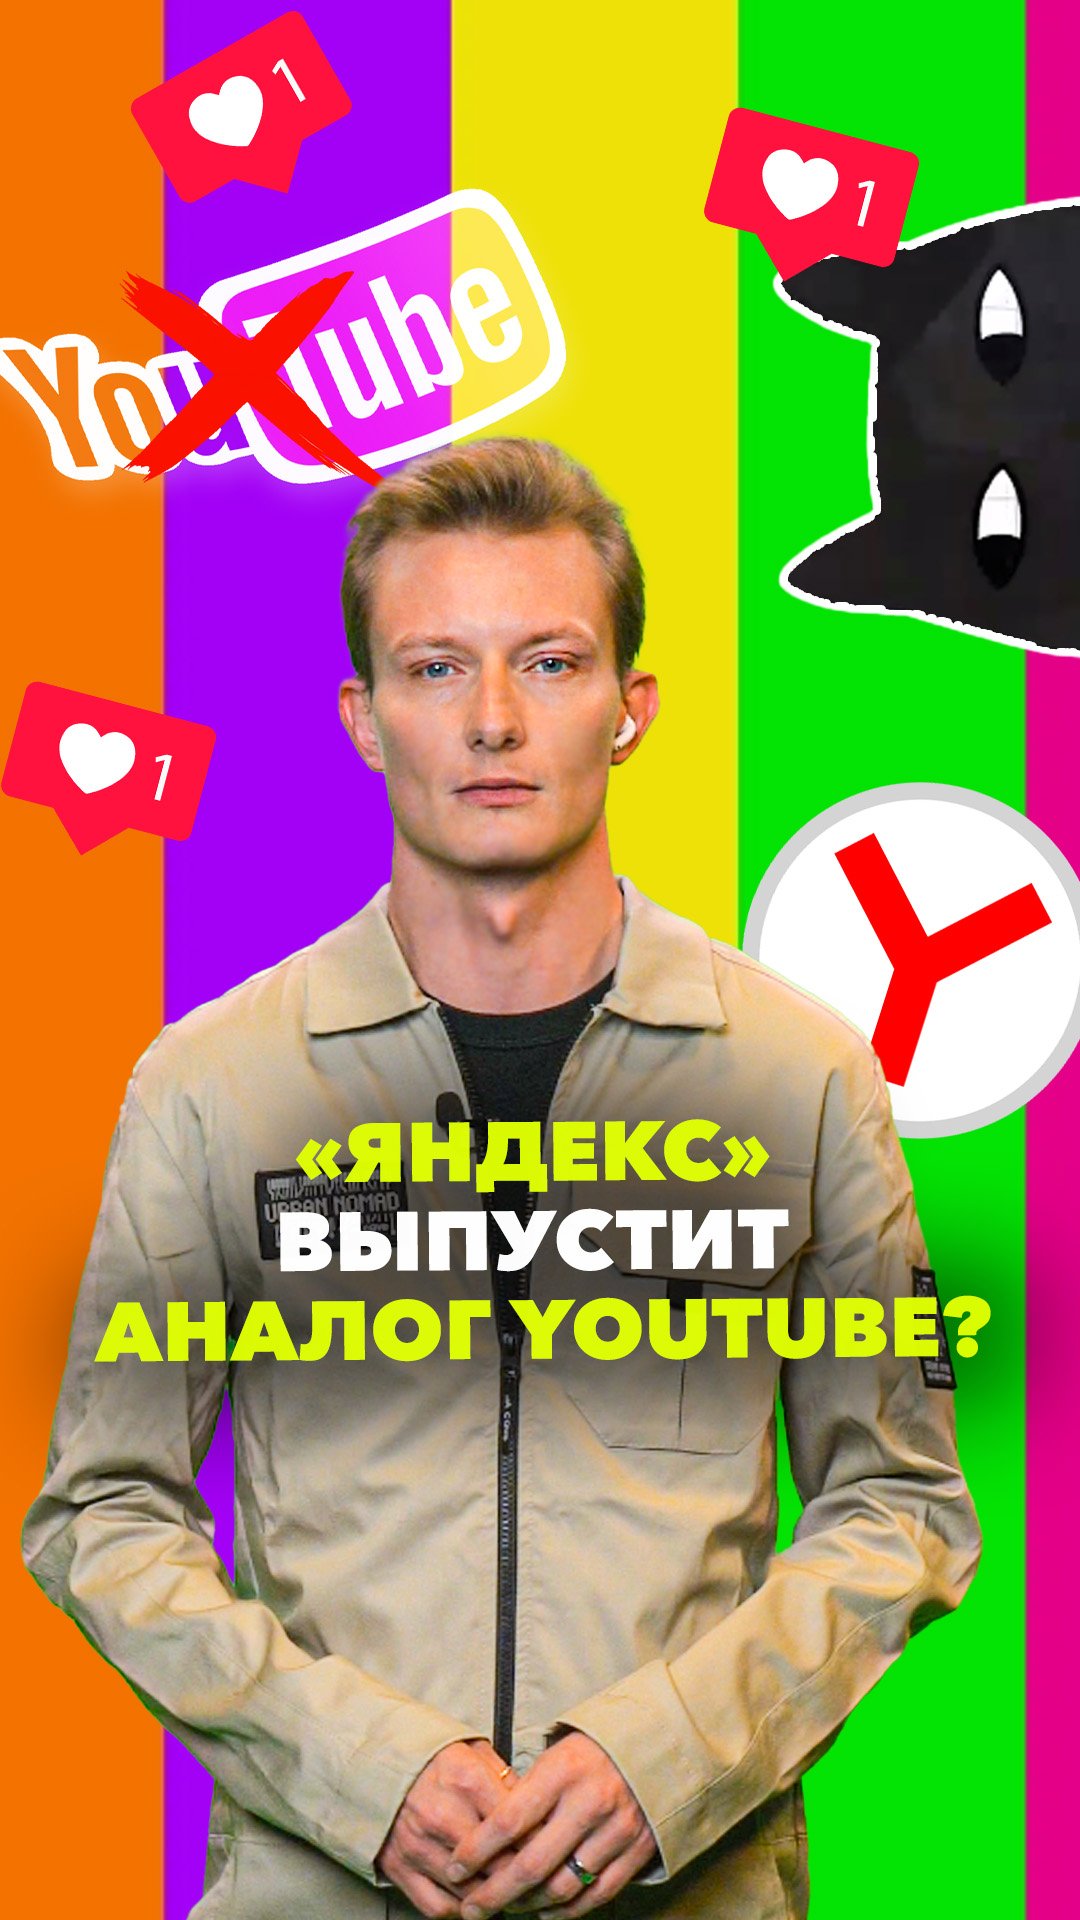 Яндекс заменит Youtube? И закроют ли youtube? Правильный ответ в выпуске МБН.